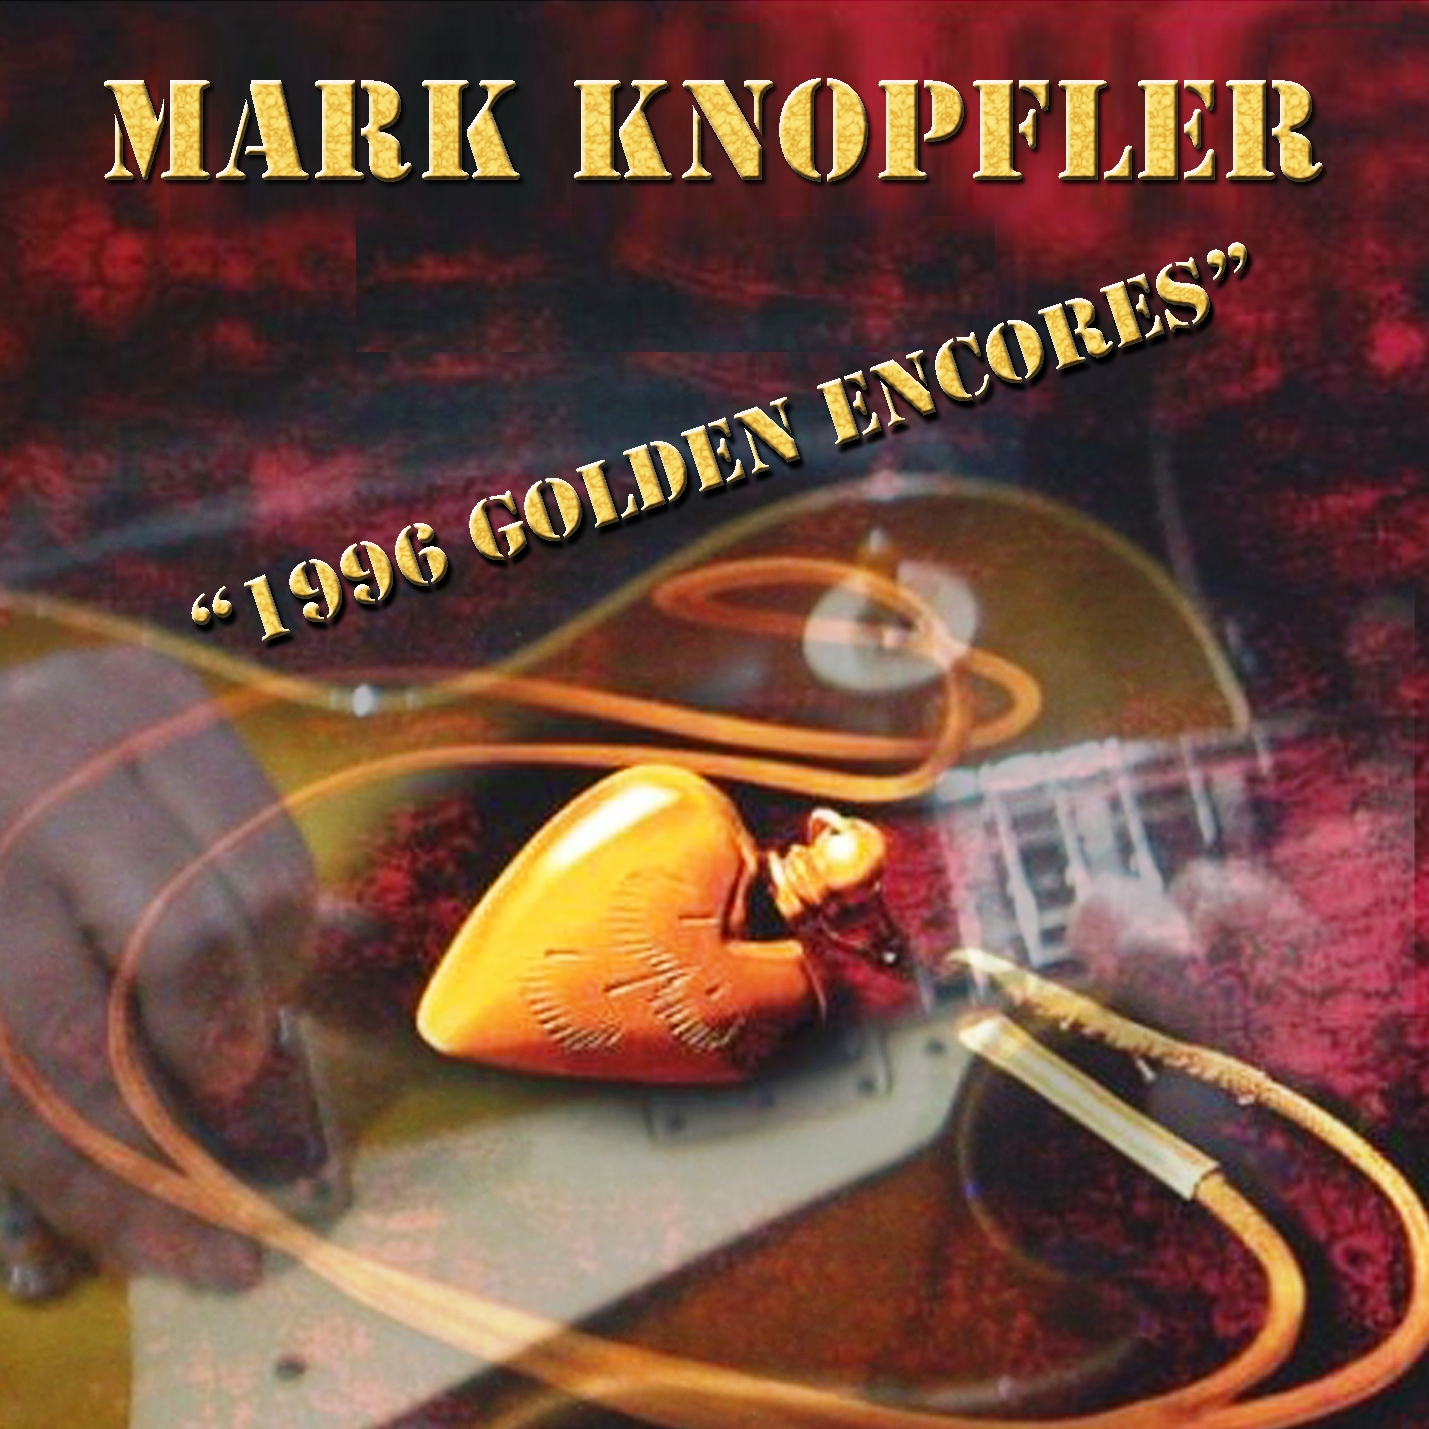 MarkKnopfler1996GoldenEncoresCompilation (2).jpg